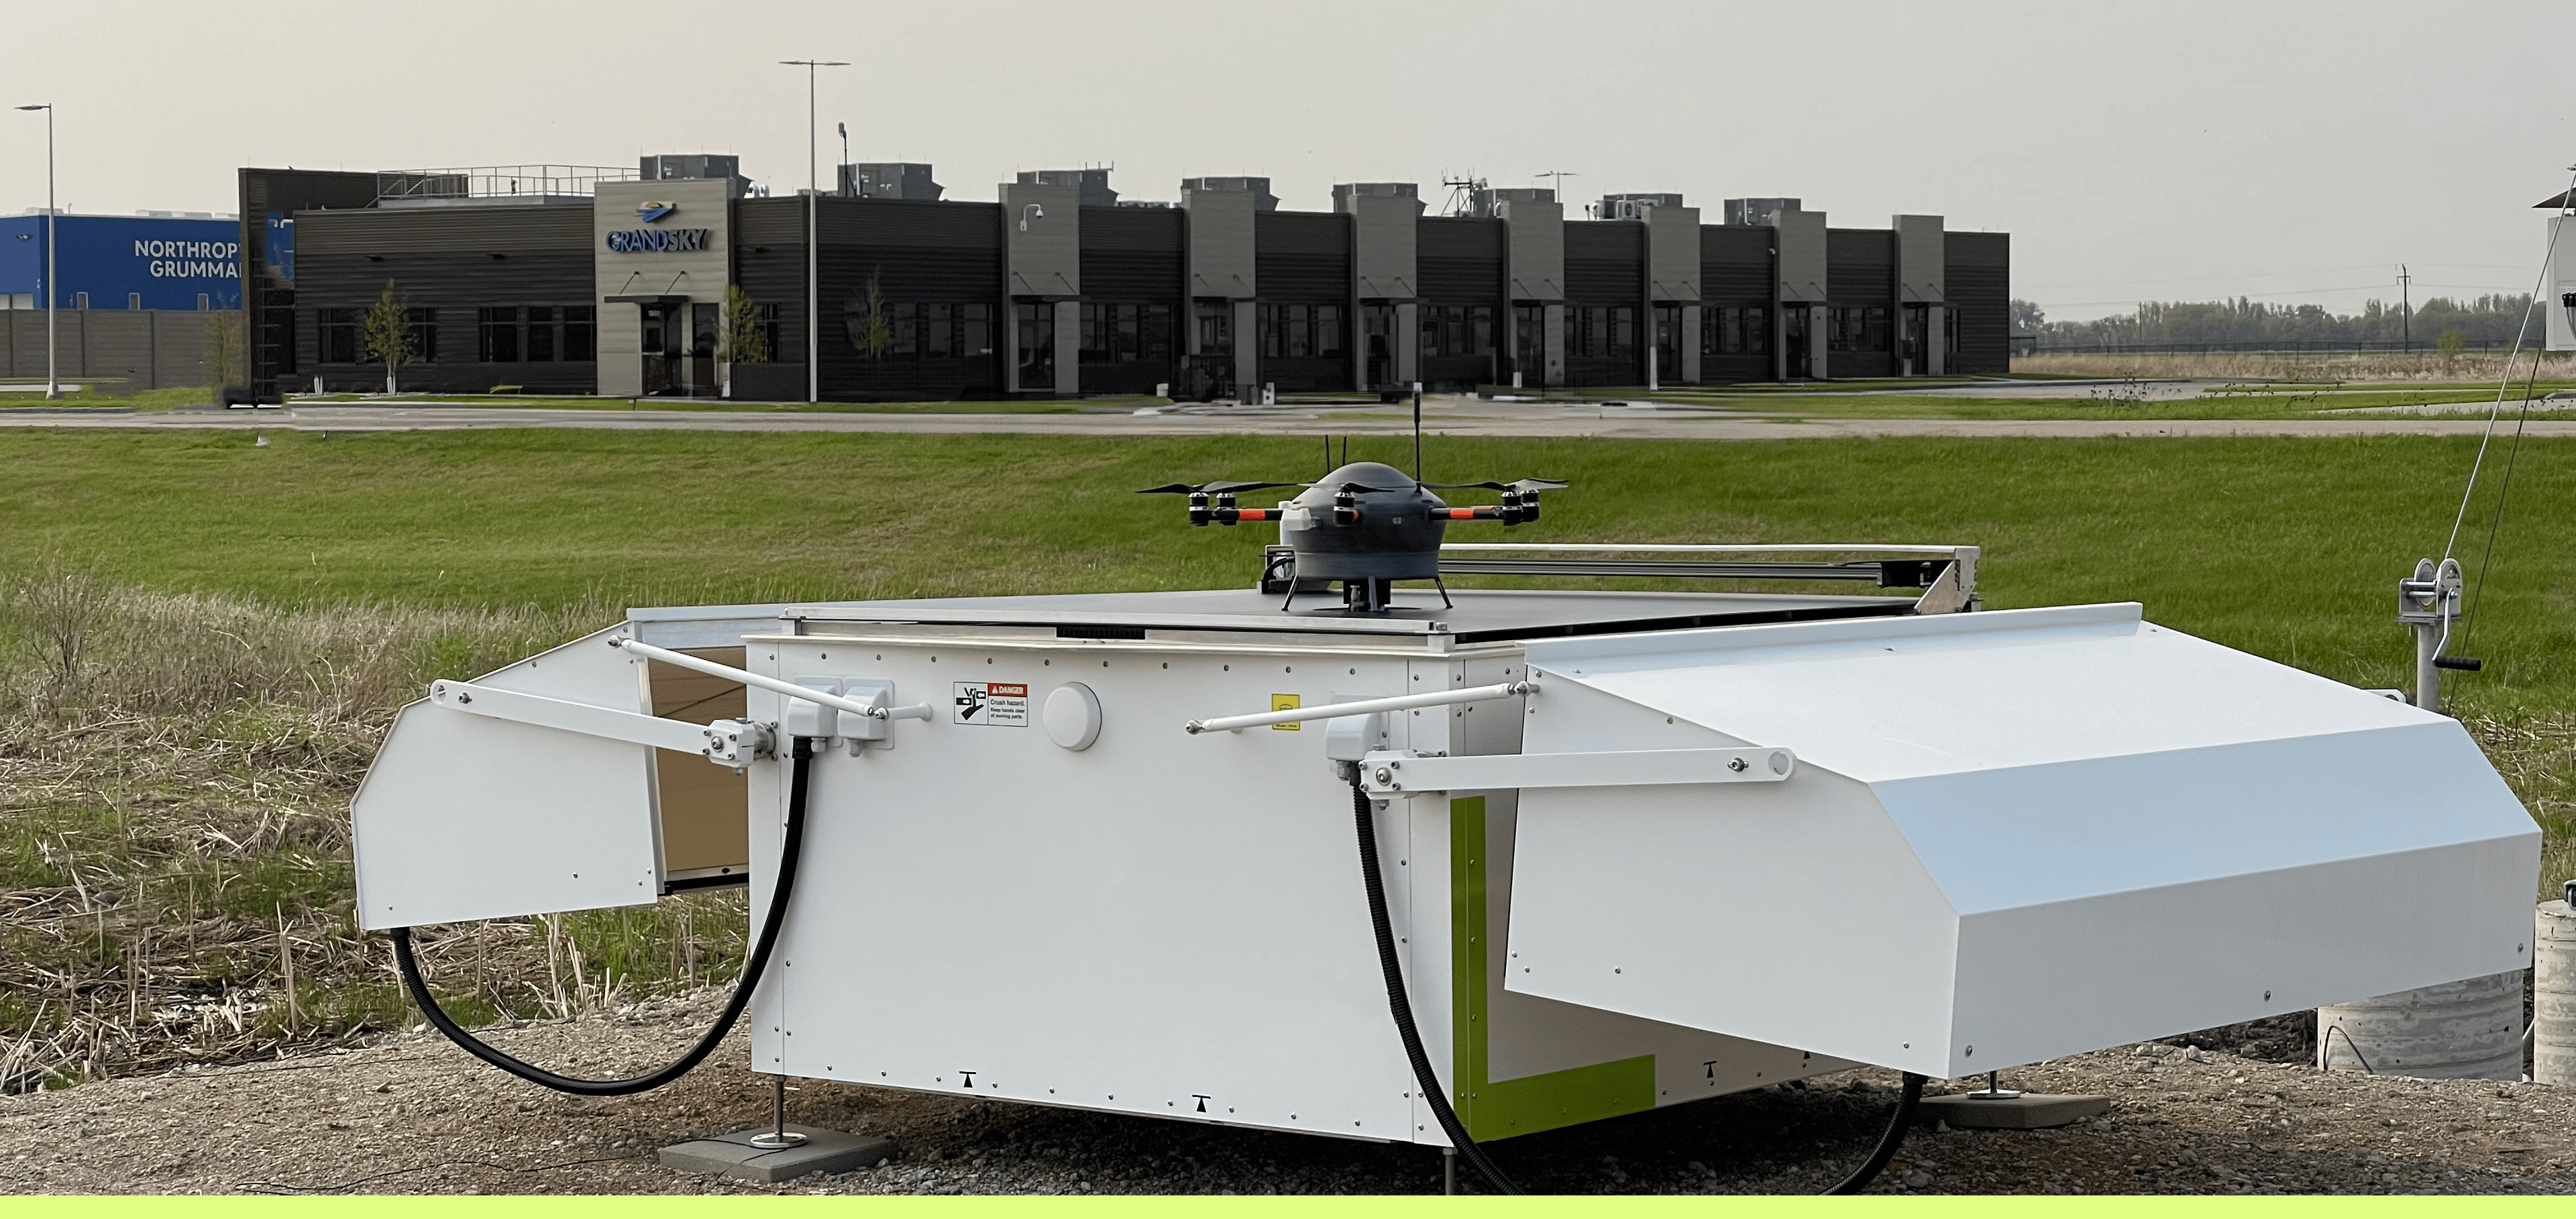 Meteobase at GrandSKY aviation park in North Dakota, U.S.